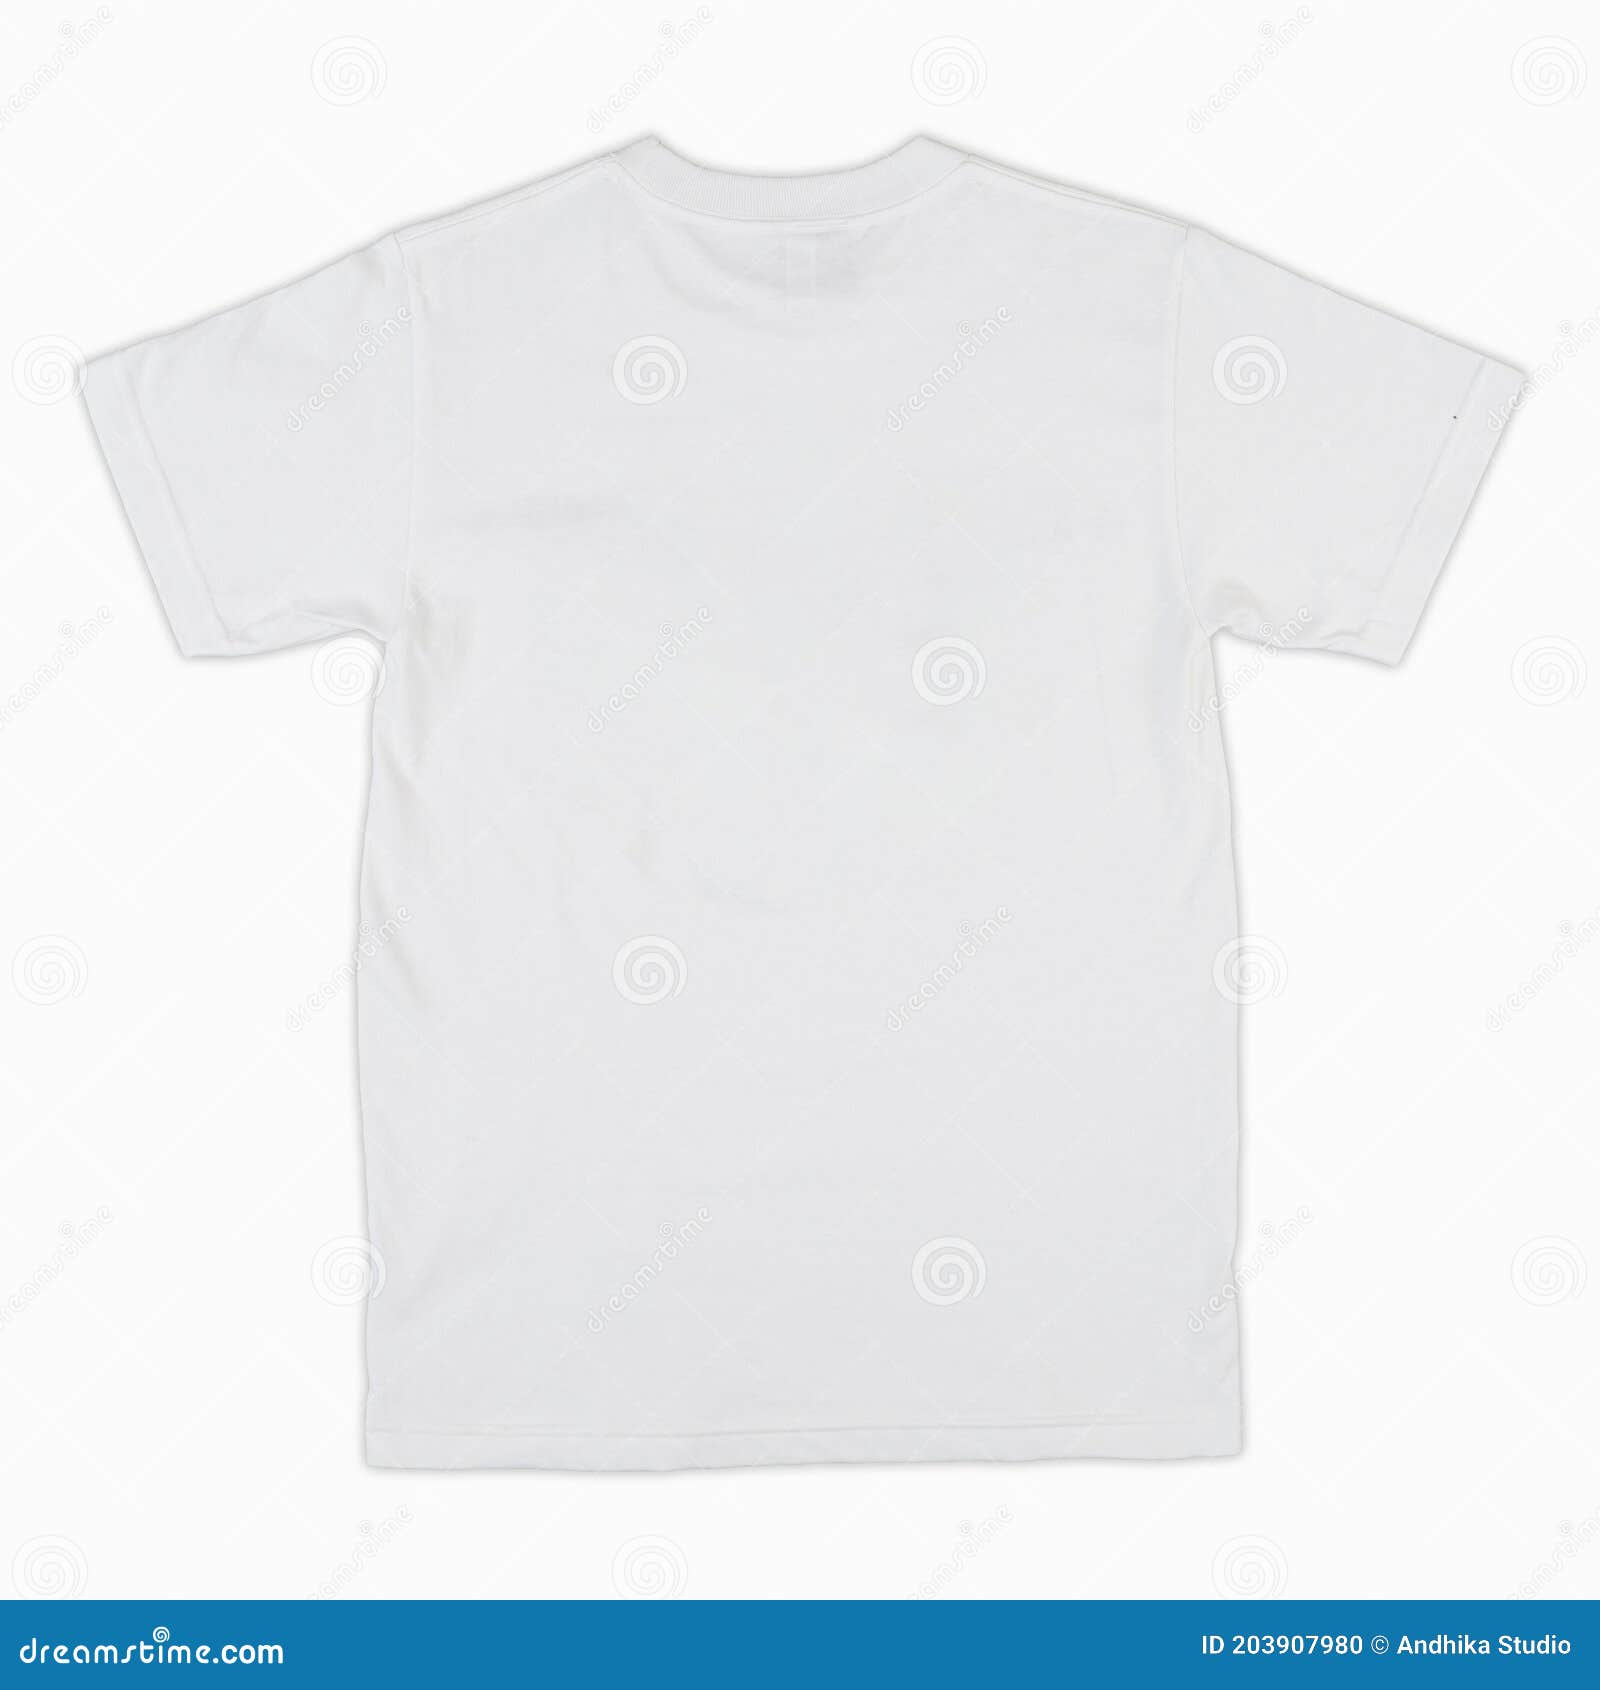 plain white t shirt outline